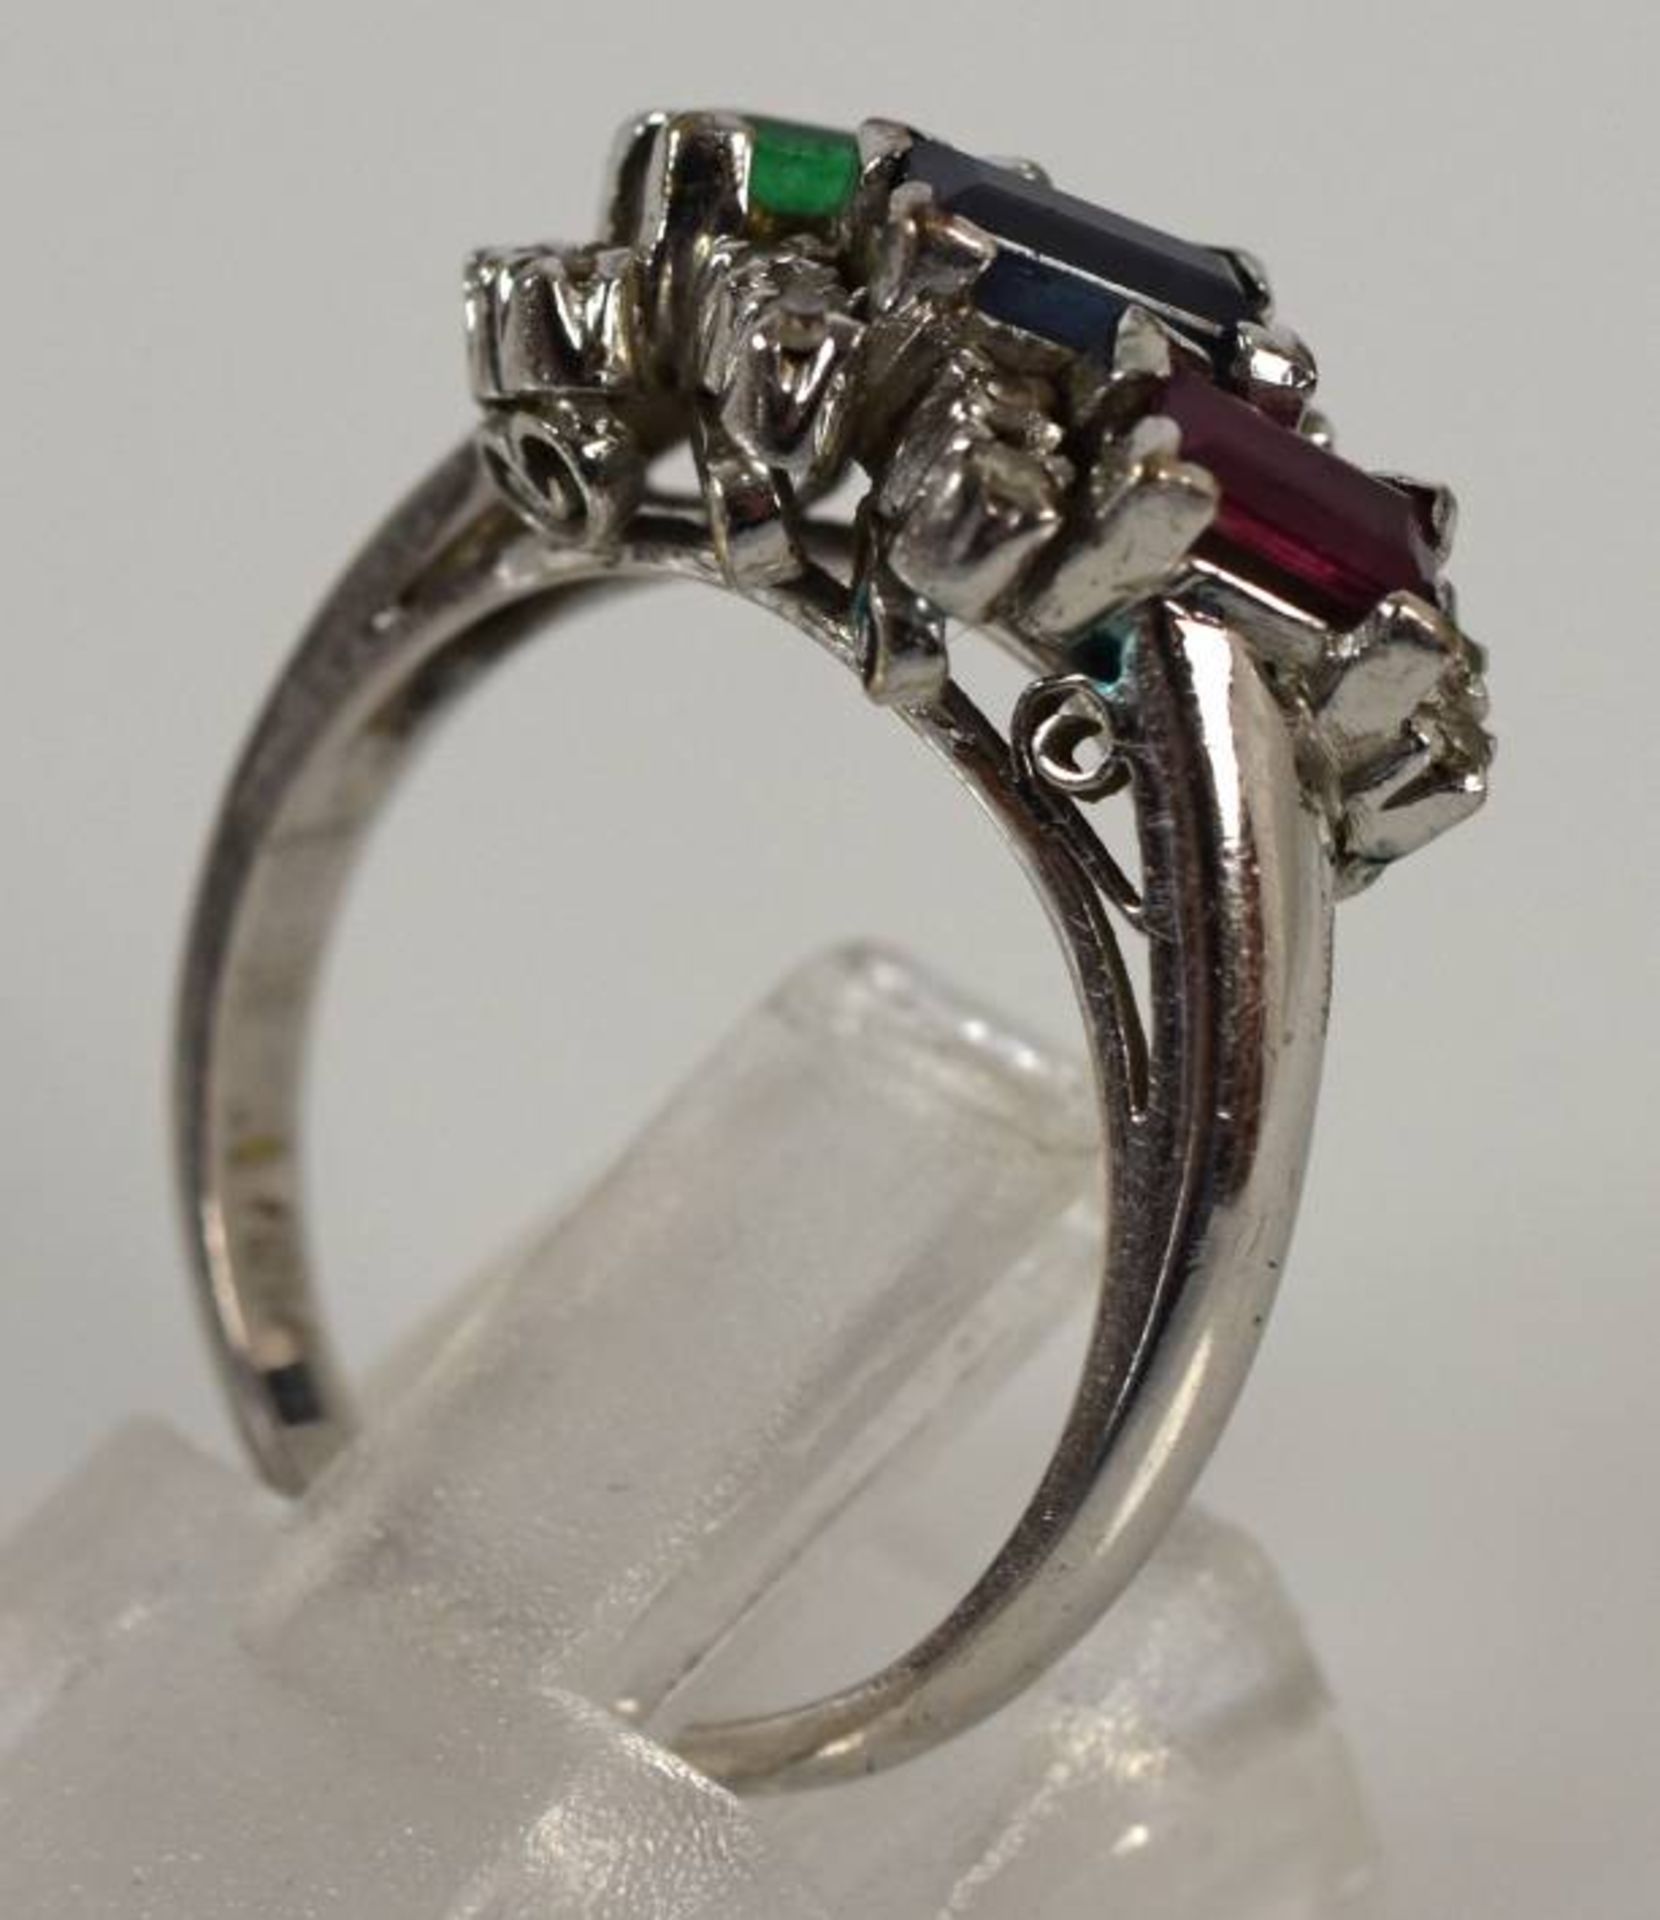 RING Schauseite mit geschliffenem Smaragd, Rubin, Saphir in Baguetteform, seitlich kleine Diamanten, - Bild 3 aus 3